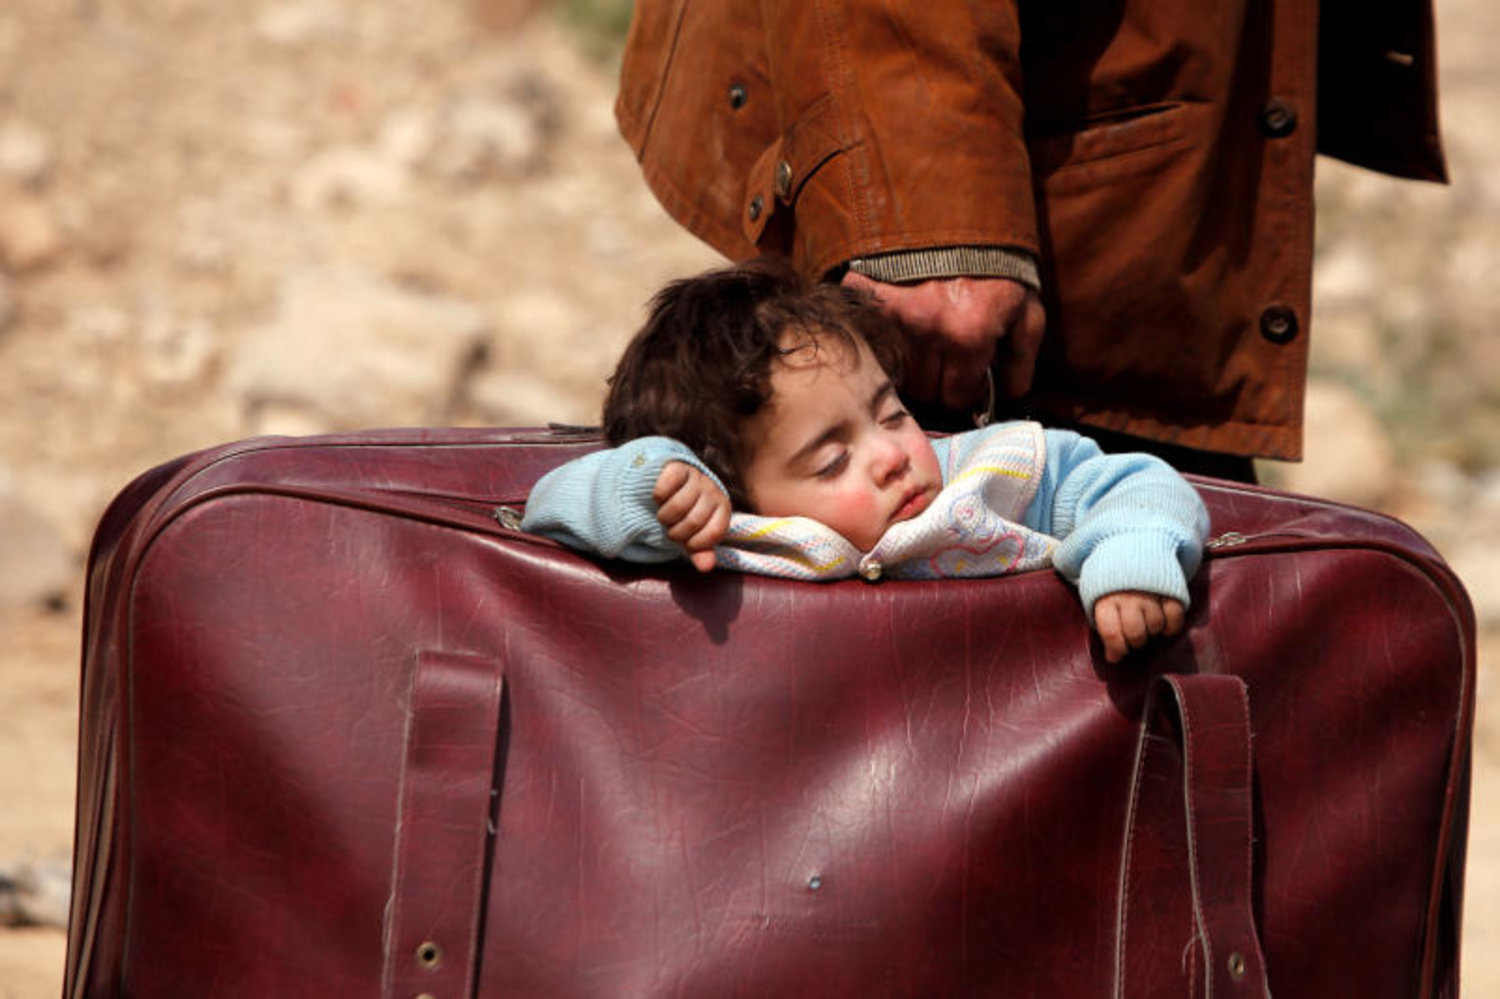 طفل سوري نازح ينام في حقيبة سفر بقرية بيت سوا في الغوطة الشرقية (رويترز)